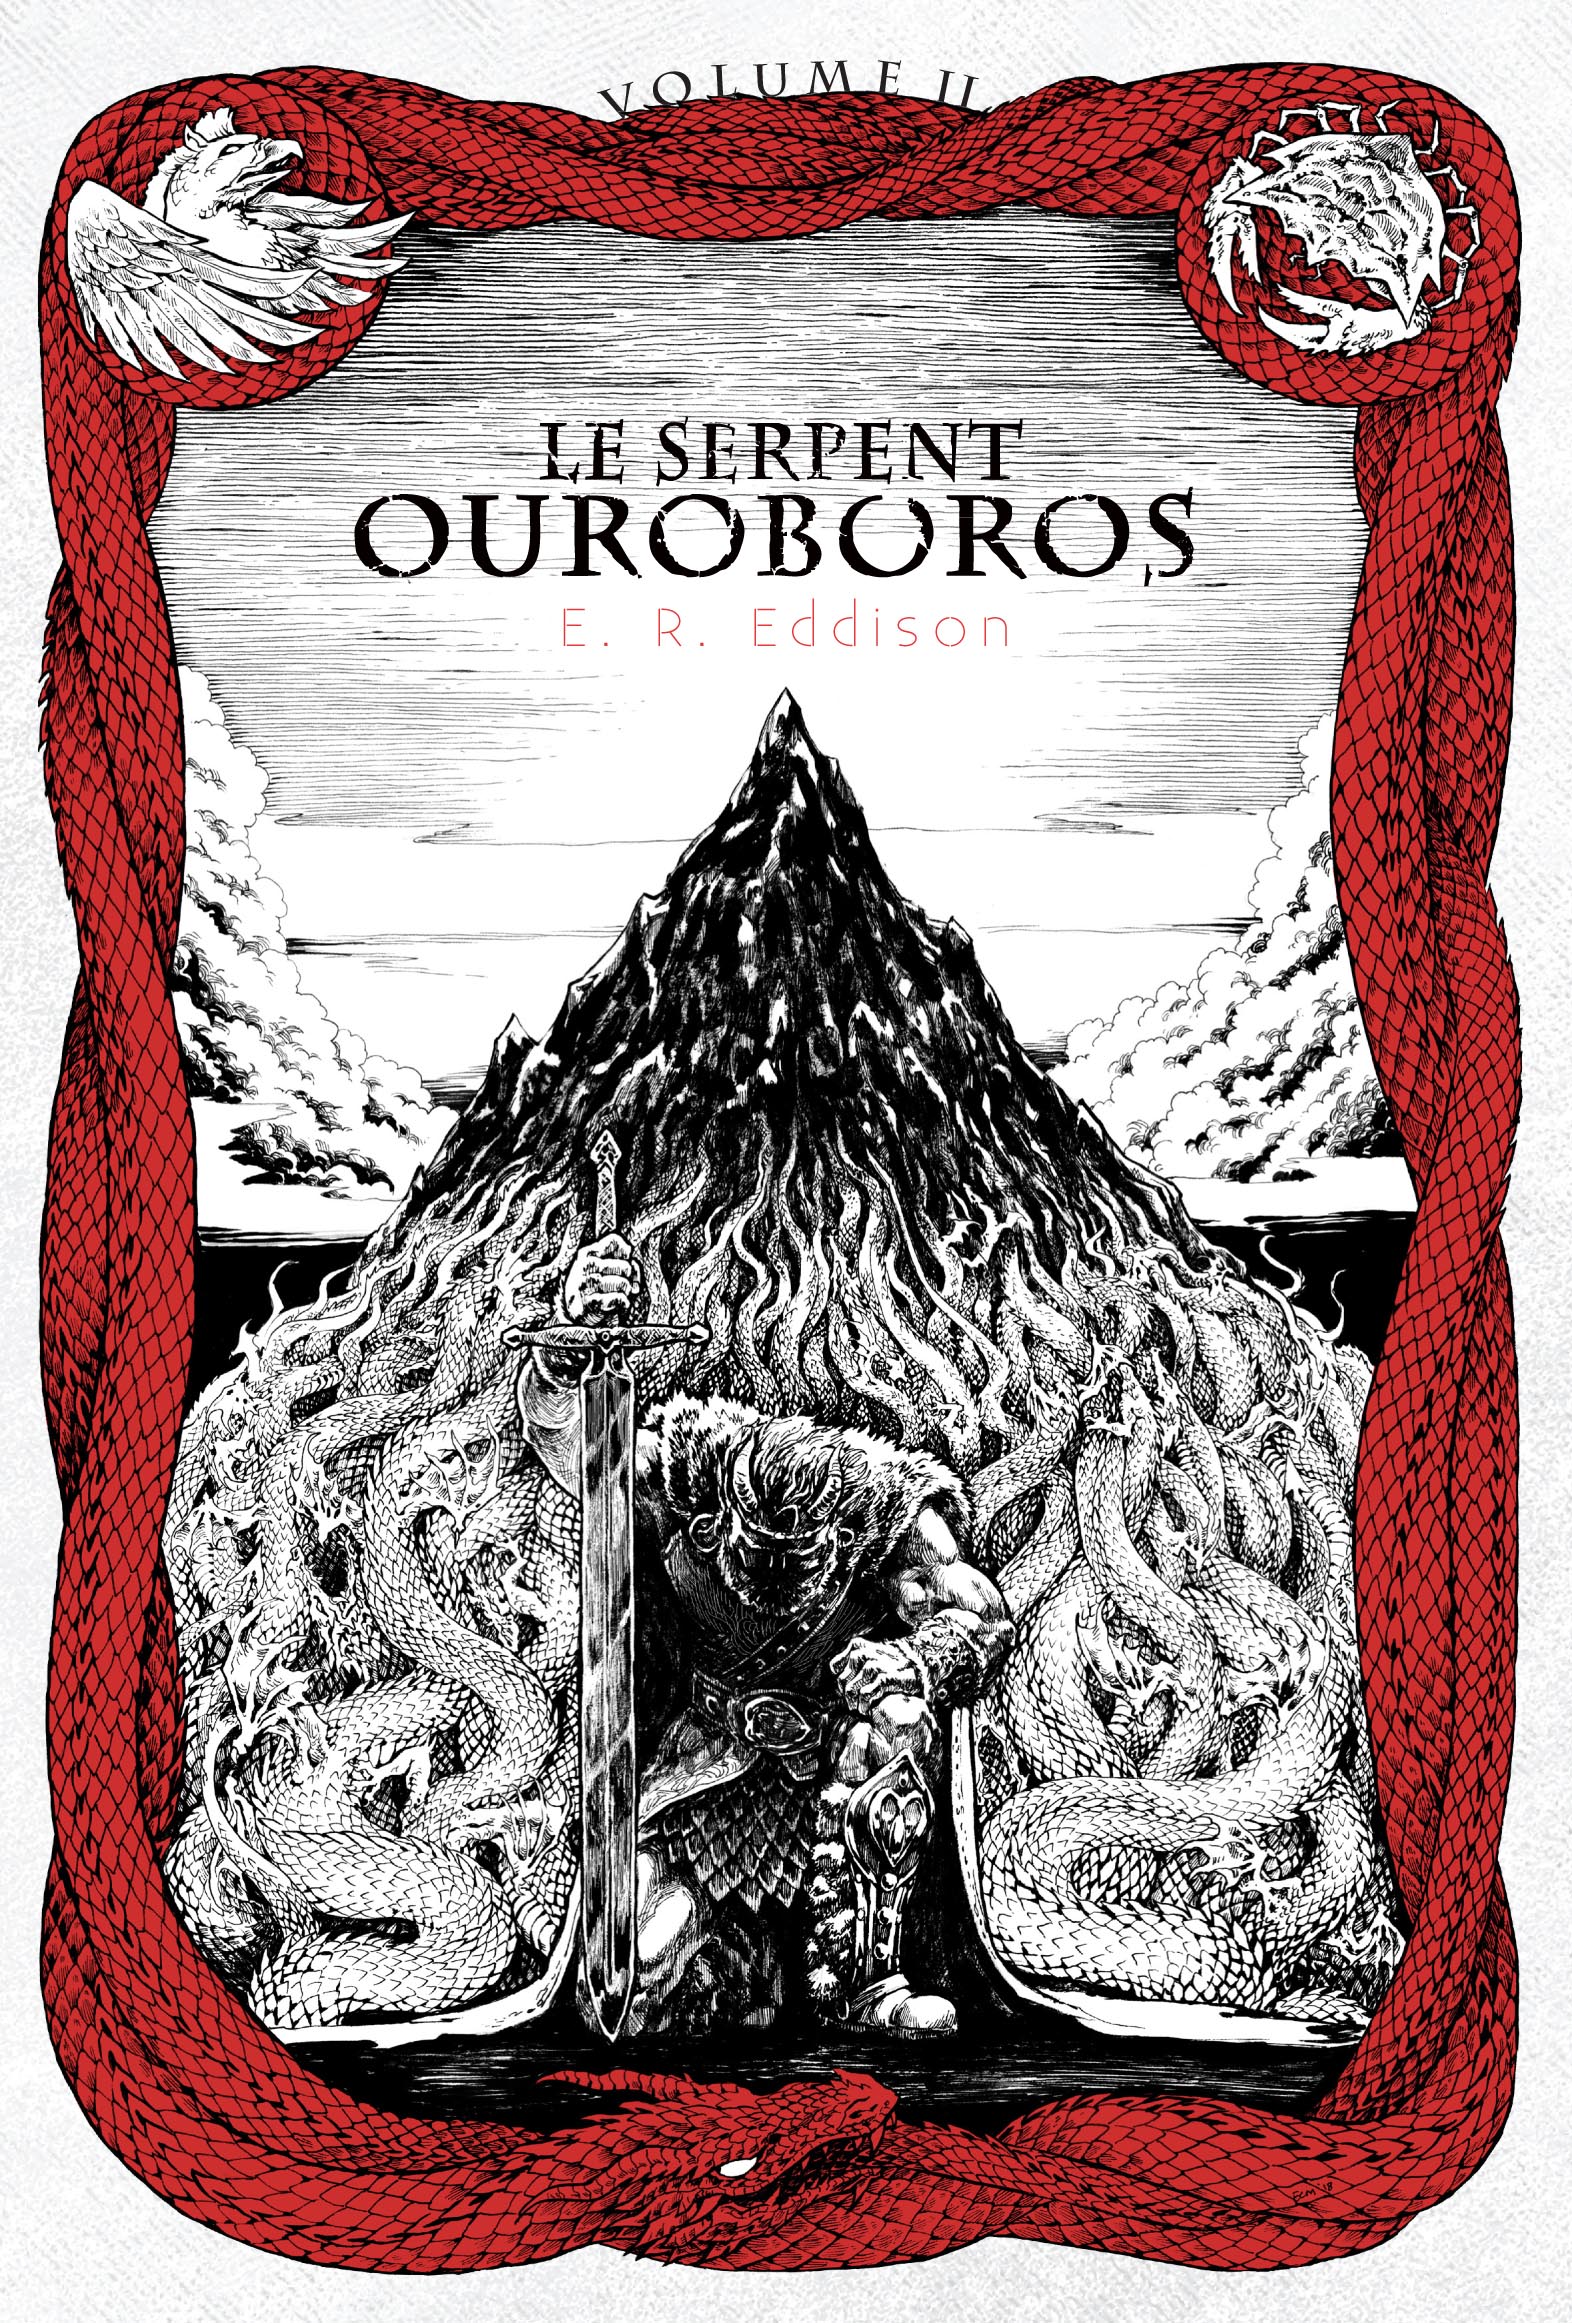 Le Serpent Ouroboros II de E.R. Eddison